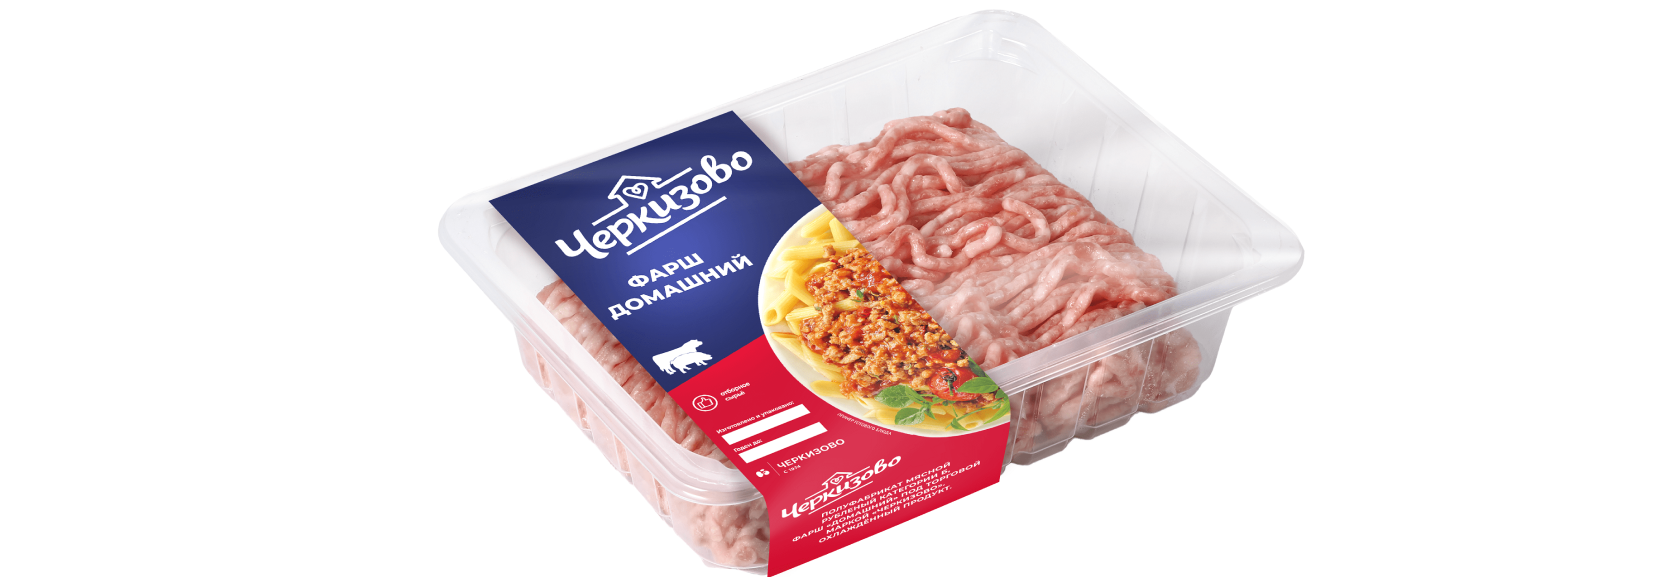 Cherkizovo brand shows 1.5x growth in ground pork sales